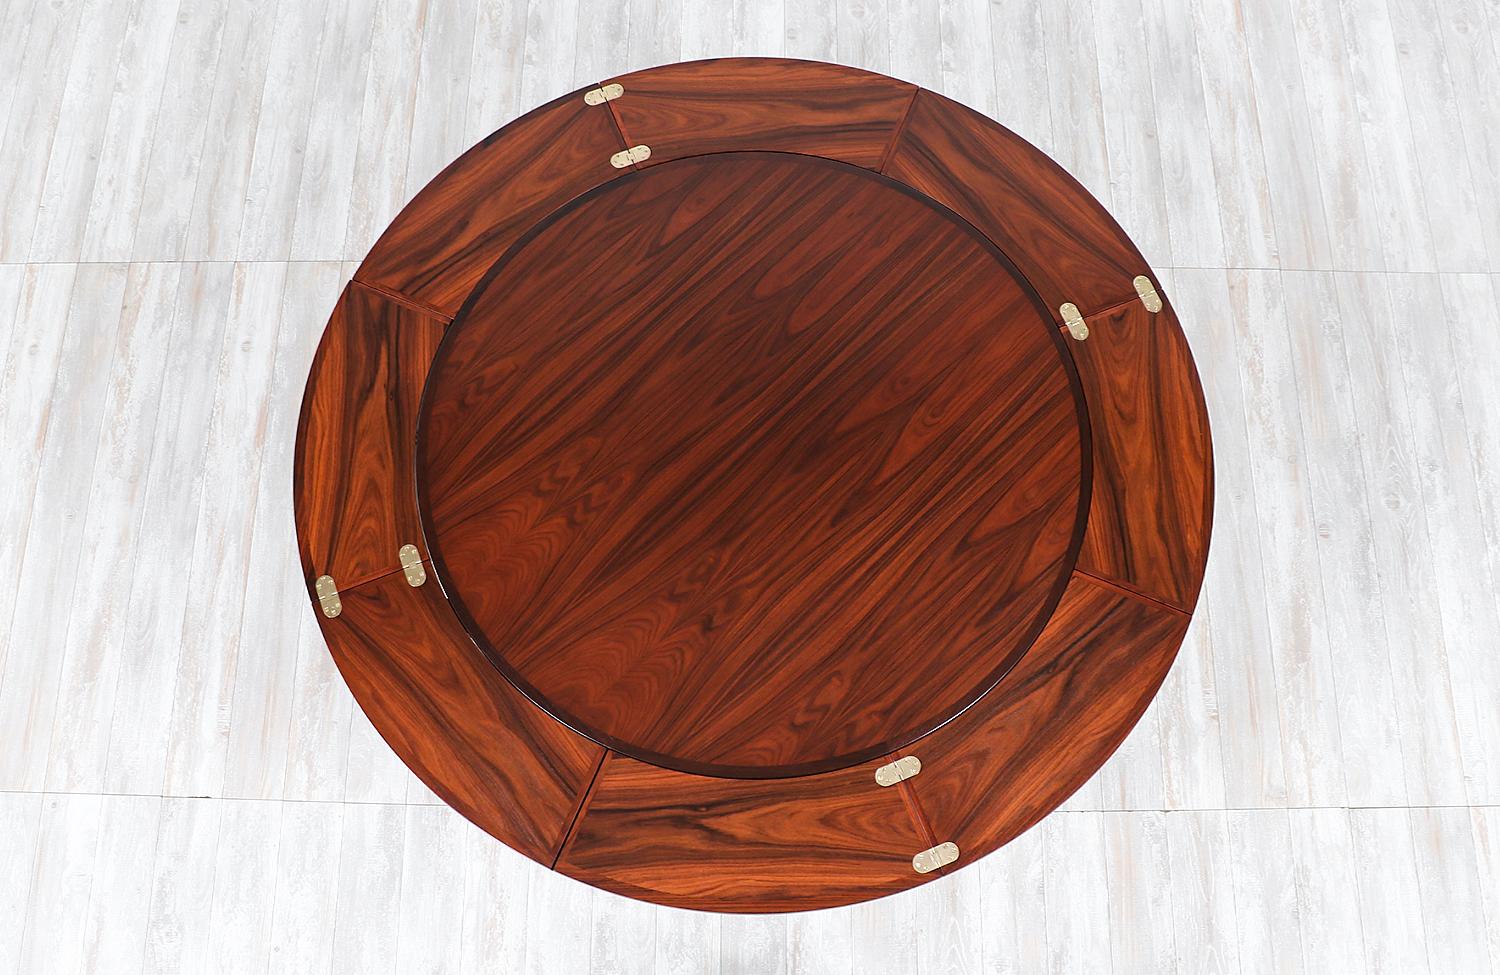 Danish Modern “Flip-Flap” Rosewood Dining Table by Dyrlund 1